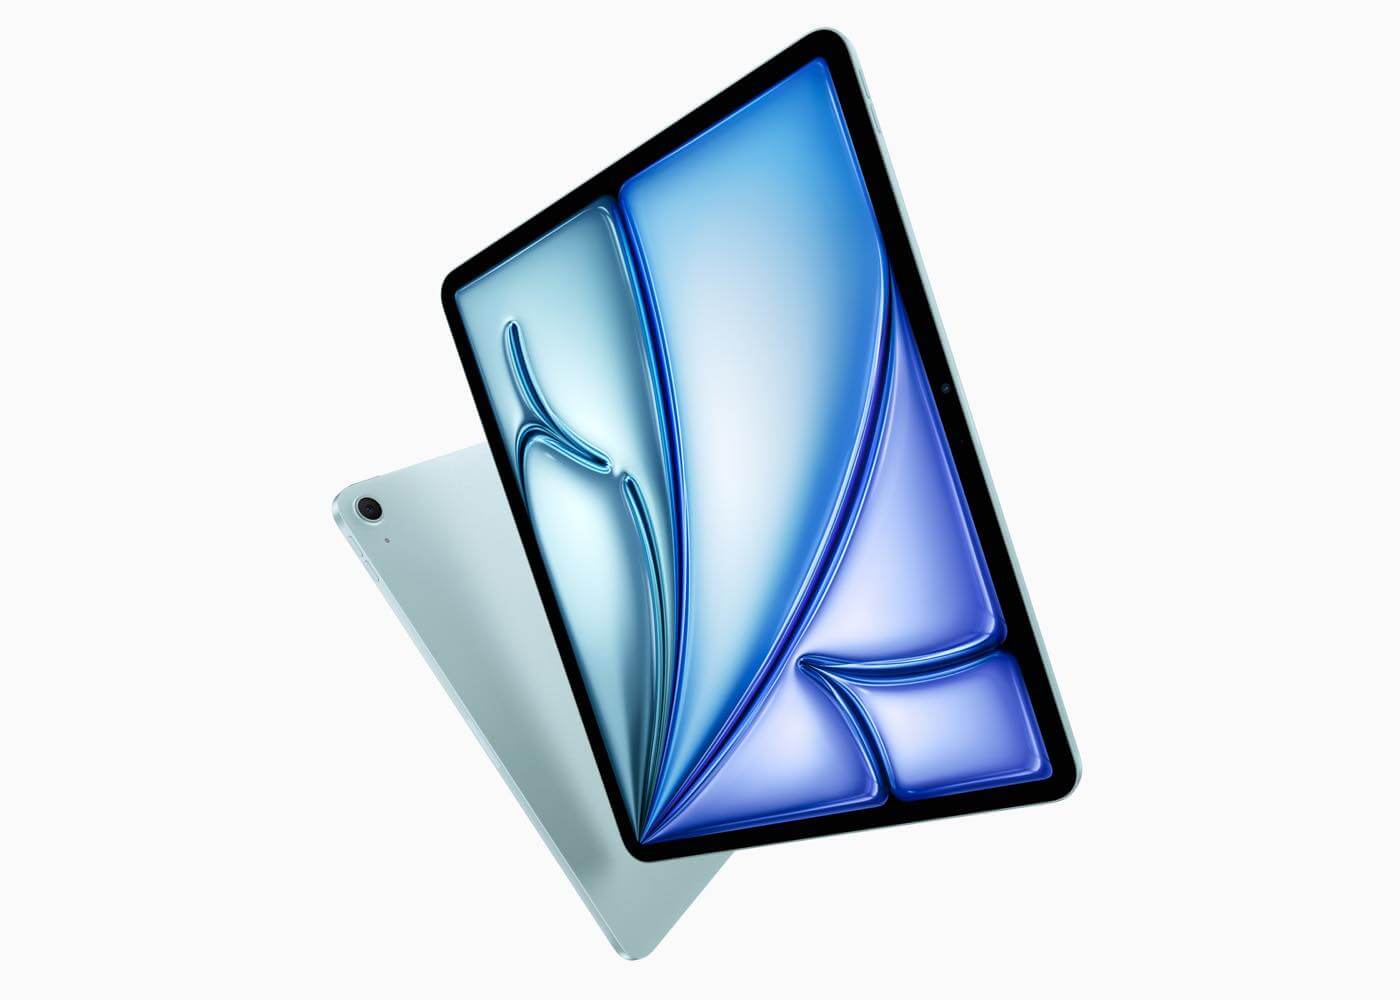 ｢iPad Air (M2)｣のGPUコア数訂正問題、Appleも正式に認める ｰ 各種性能のデータは9コアに基づいたもので正確と主張